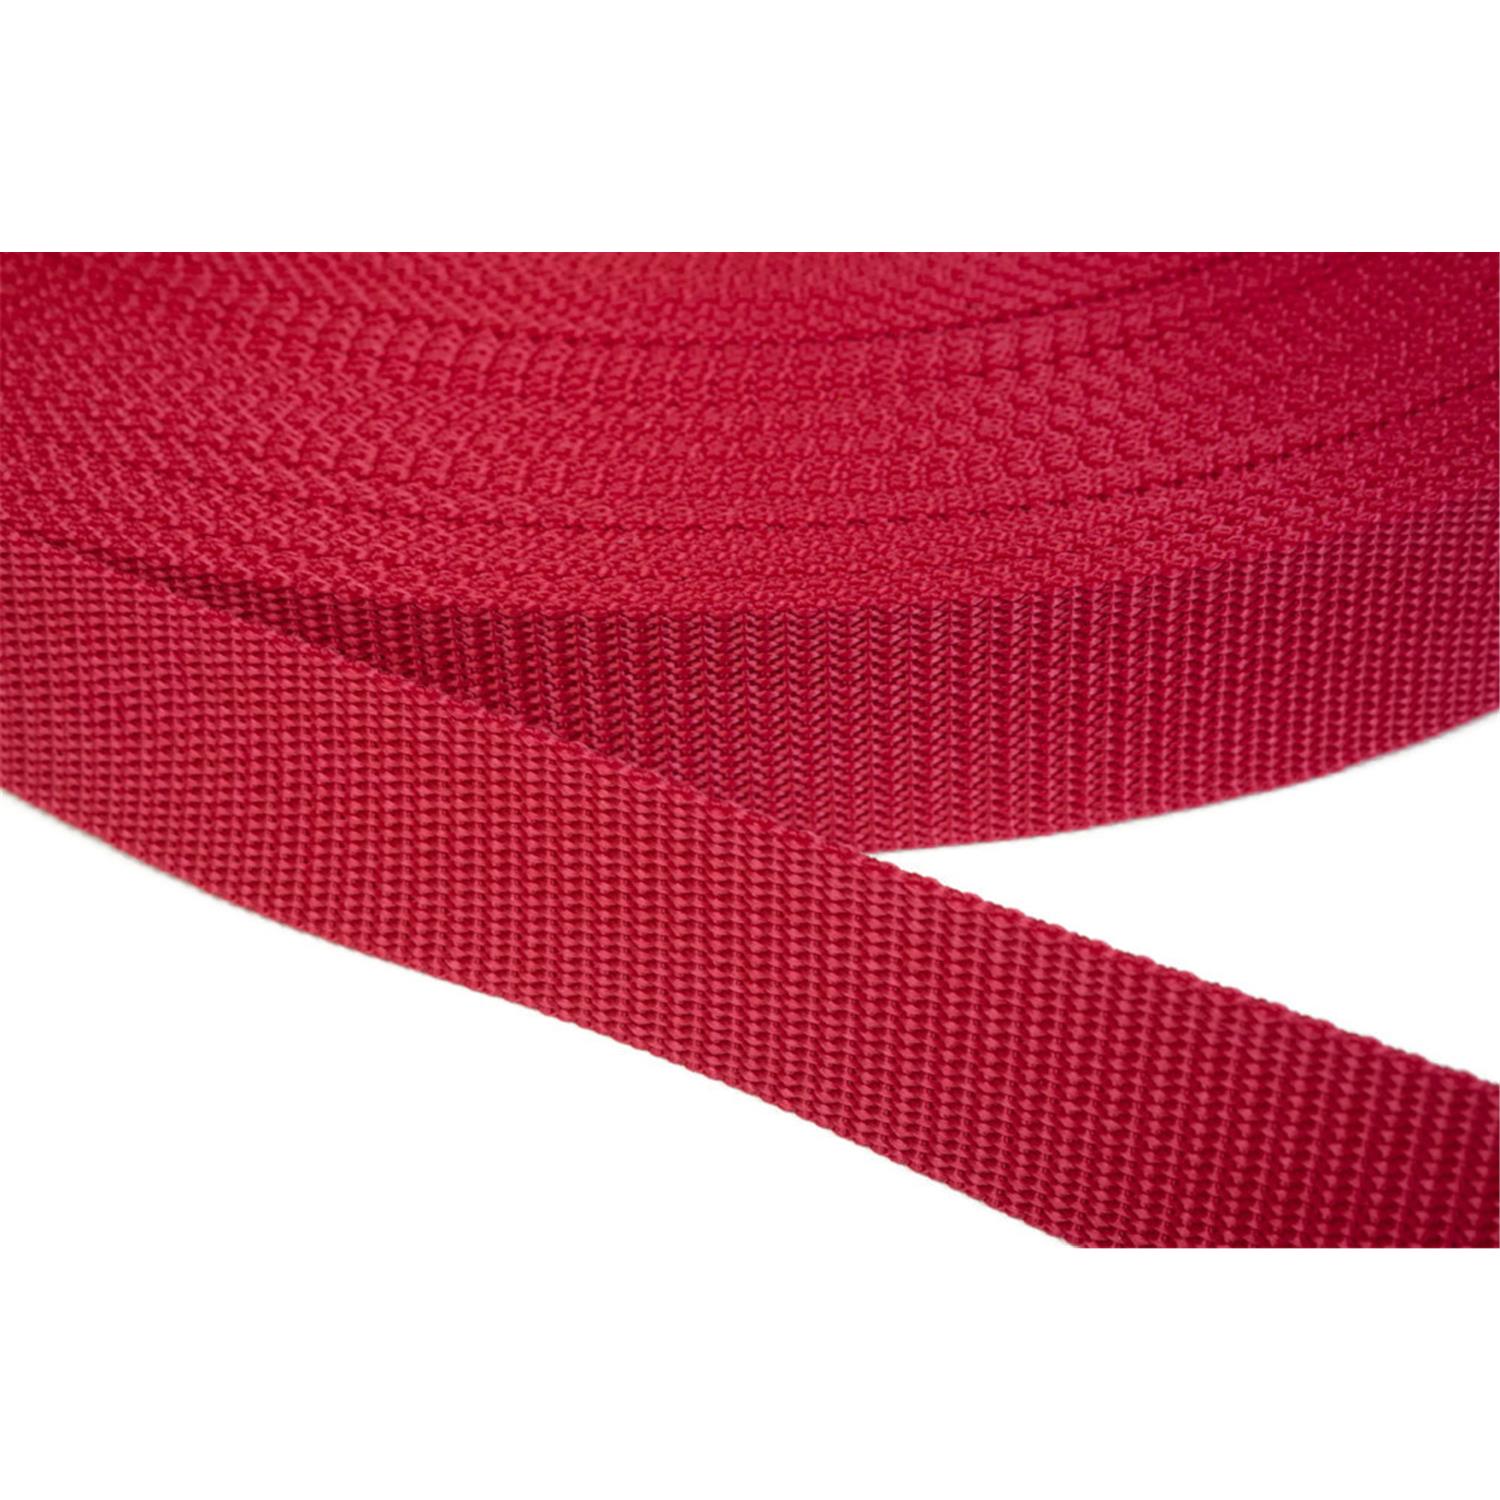 Gurtband 40mm breit aus Polypropylen in 41 Farben 19 - rot 6 Meter